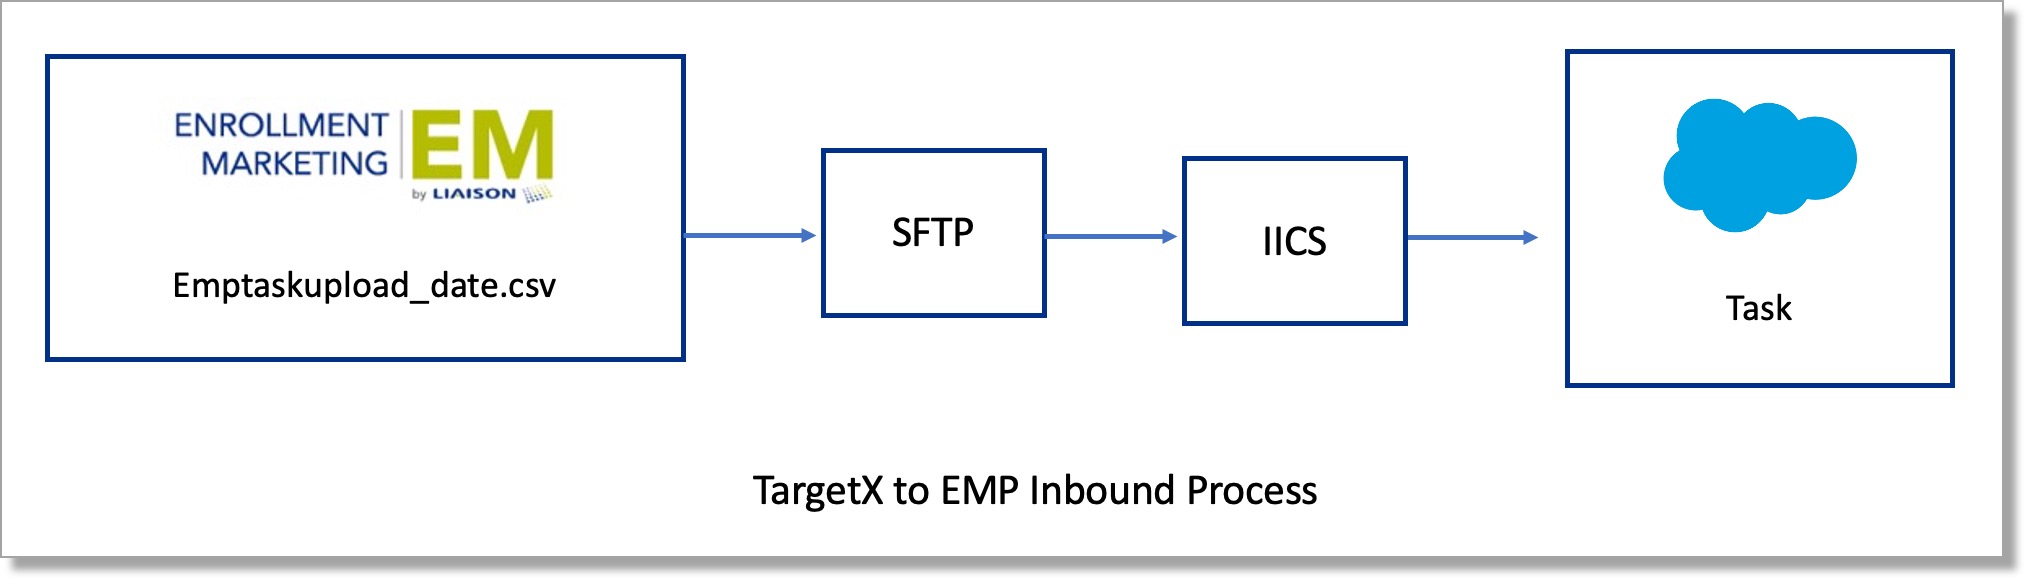 TargetX to EMP Inbound Process diagram